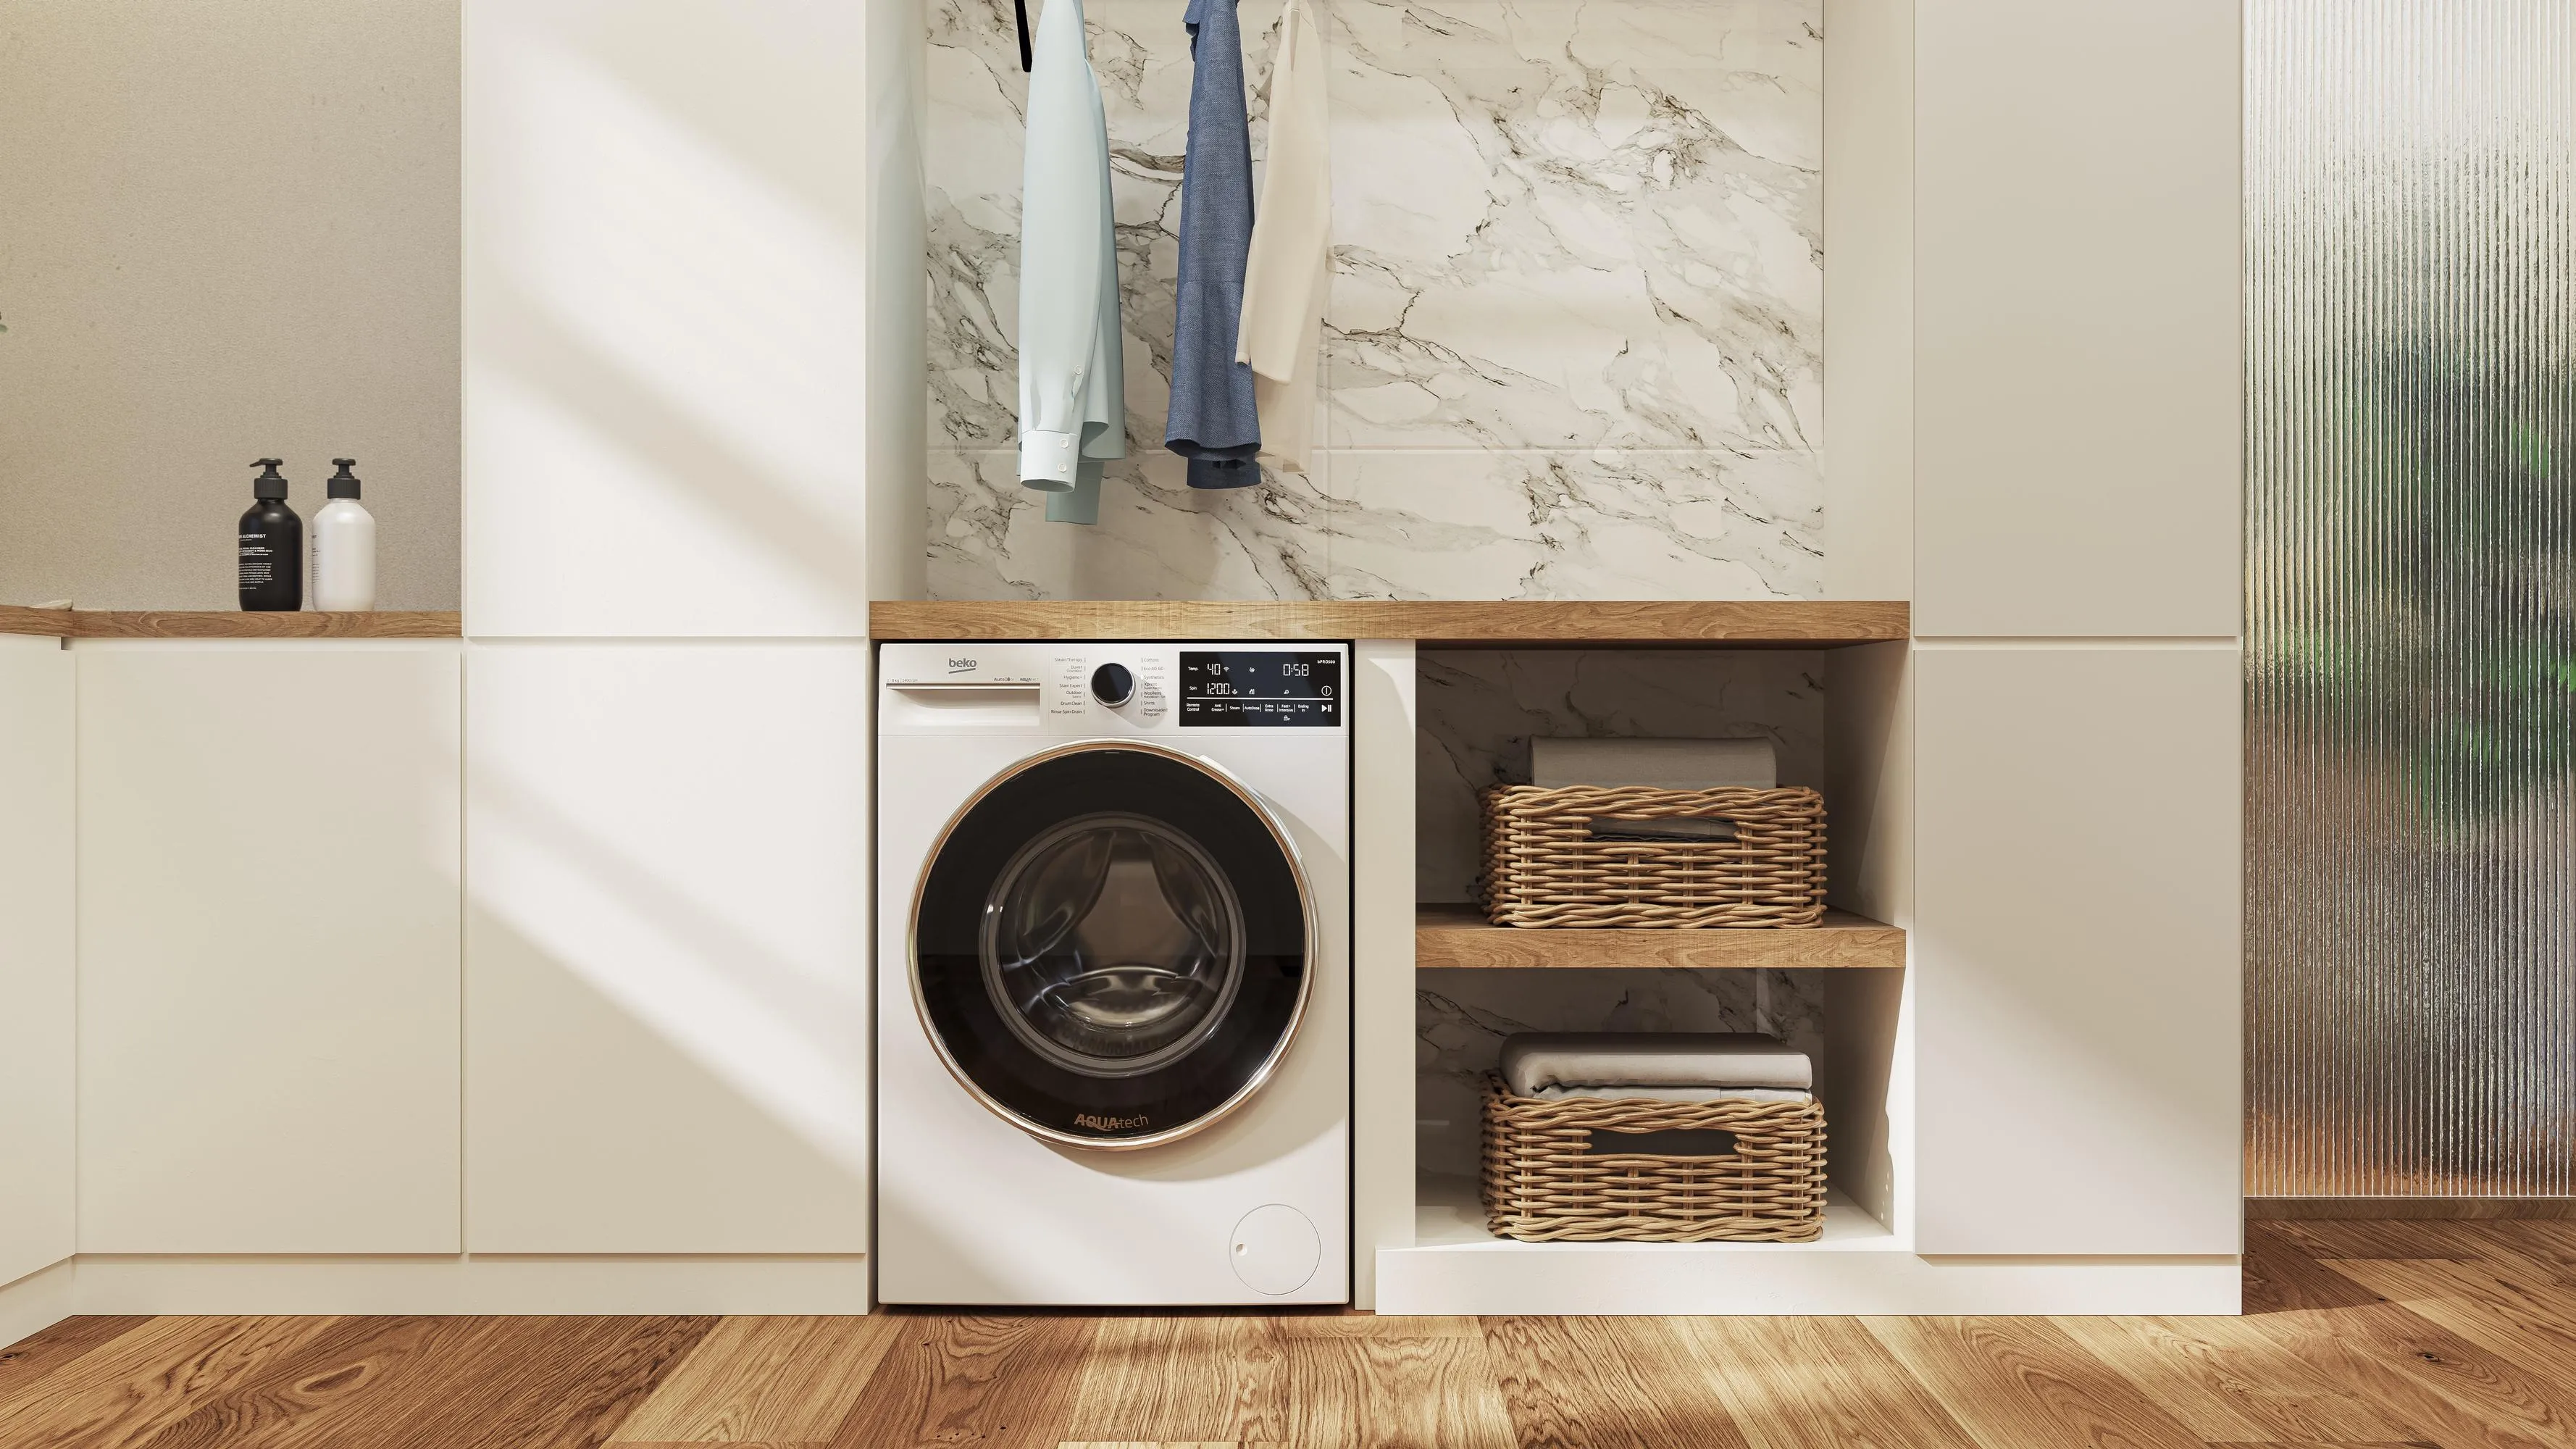 Nuove lavatrici connesse, intelligenti e sostenibili - Cose di Casa